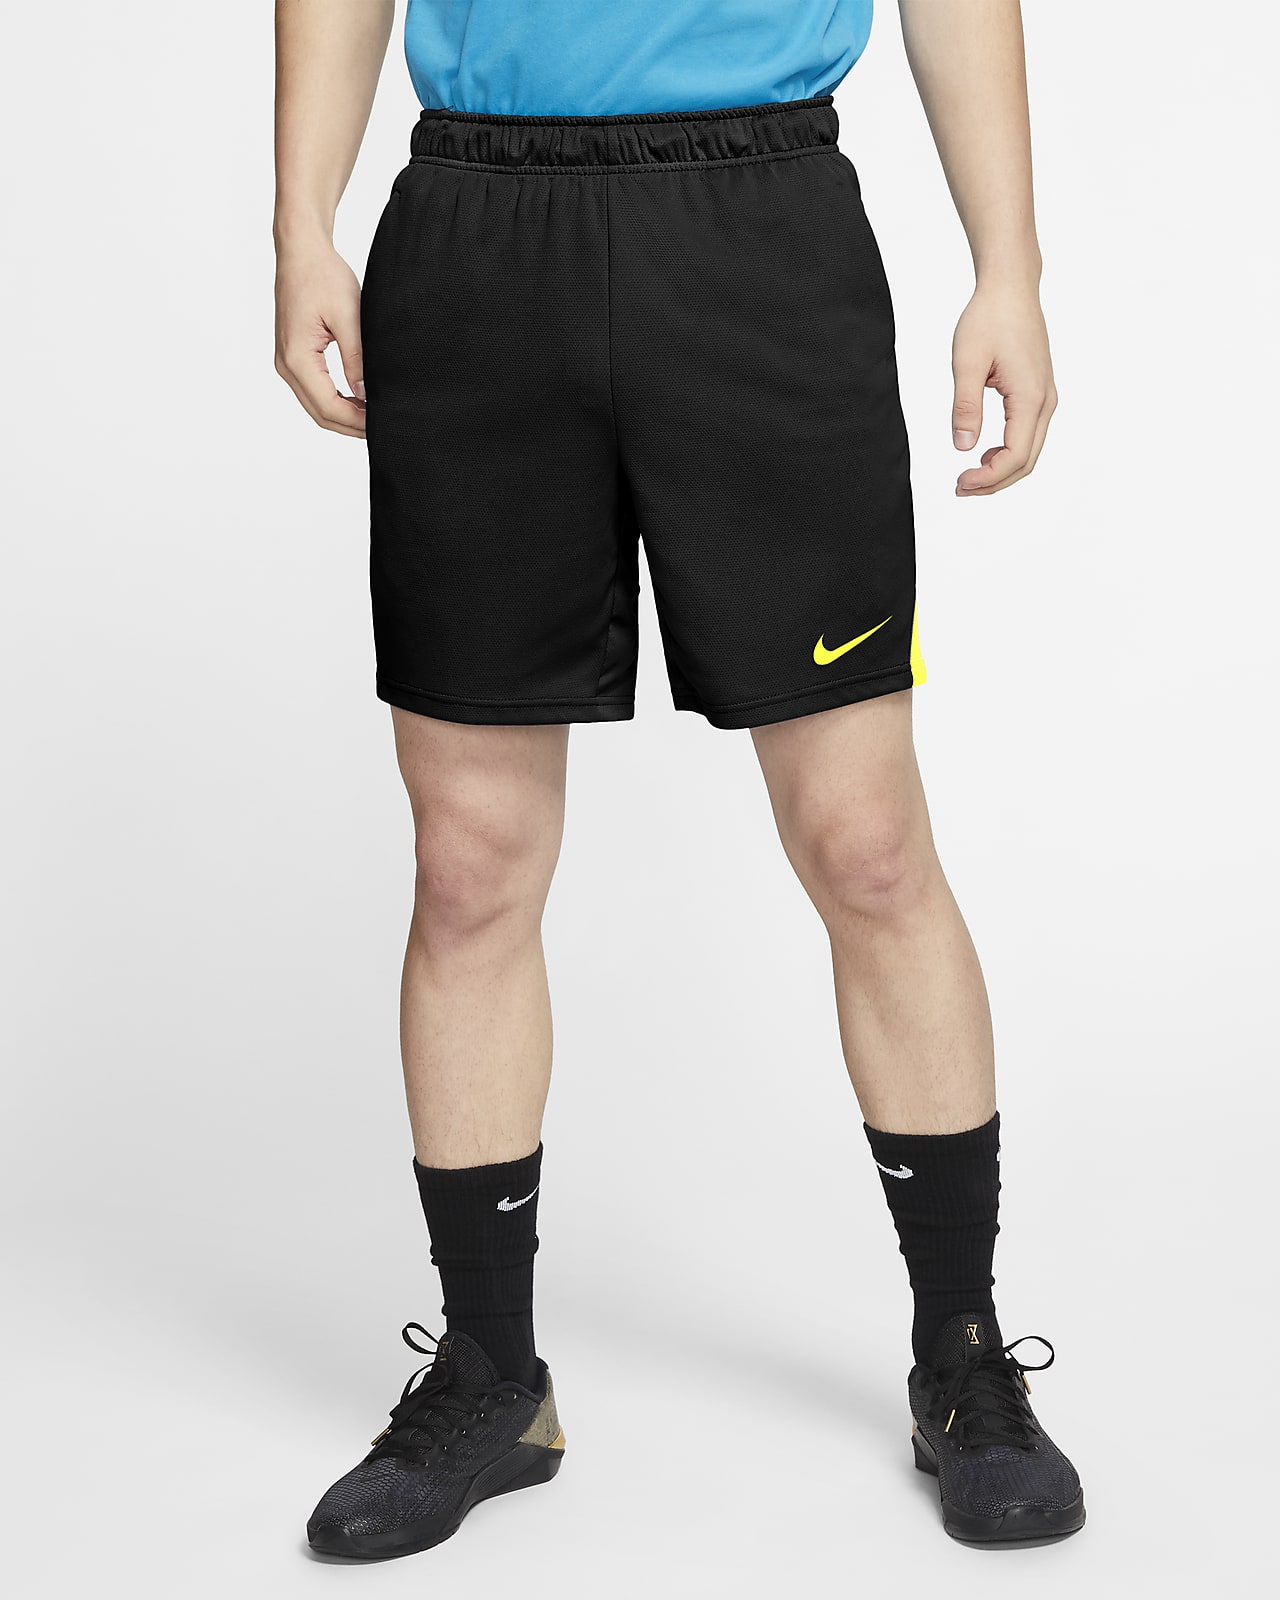 Nike Dri-FIT Men's Training Shorts. Nike SG